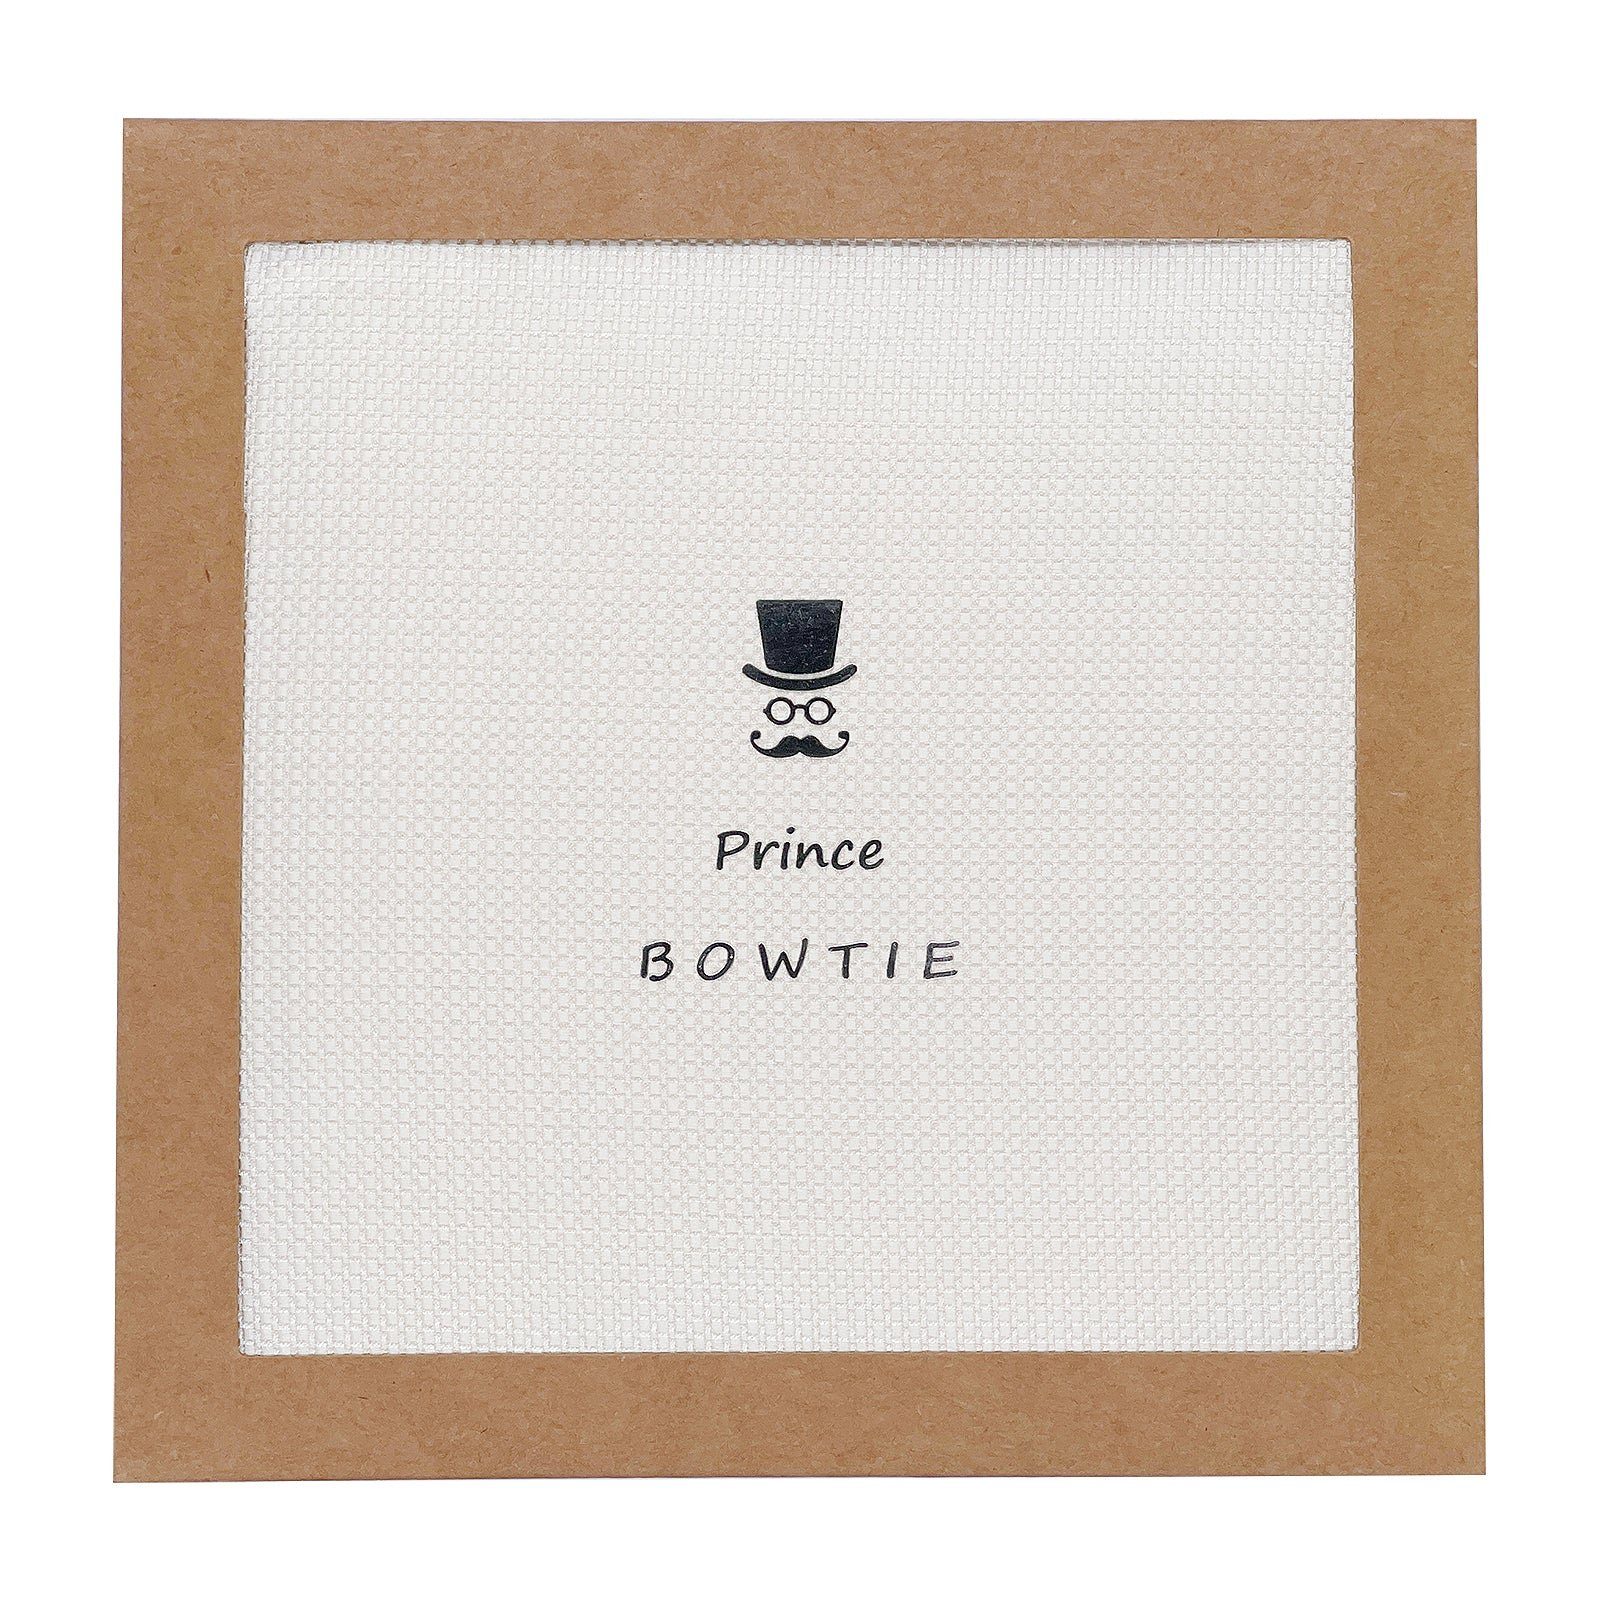 Prince Bowtie Einstecktuch white off